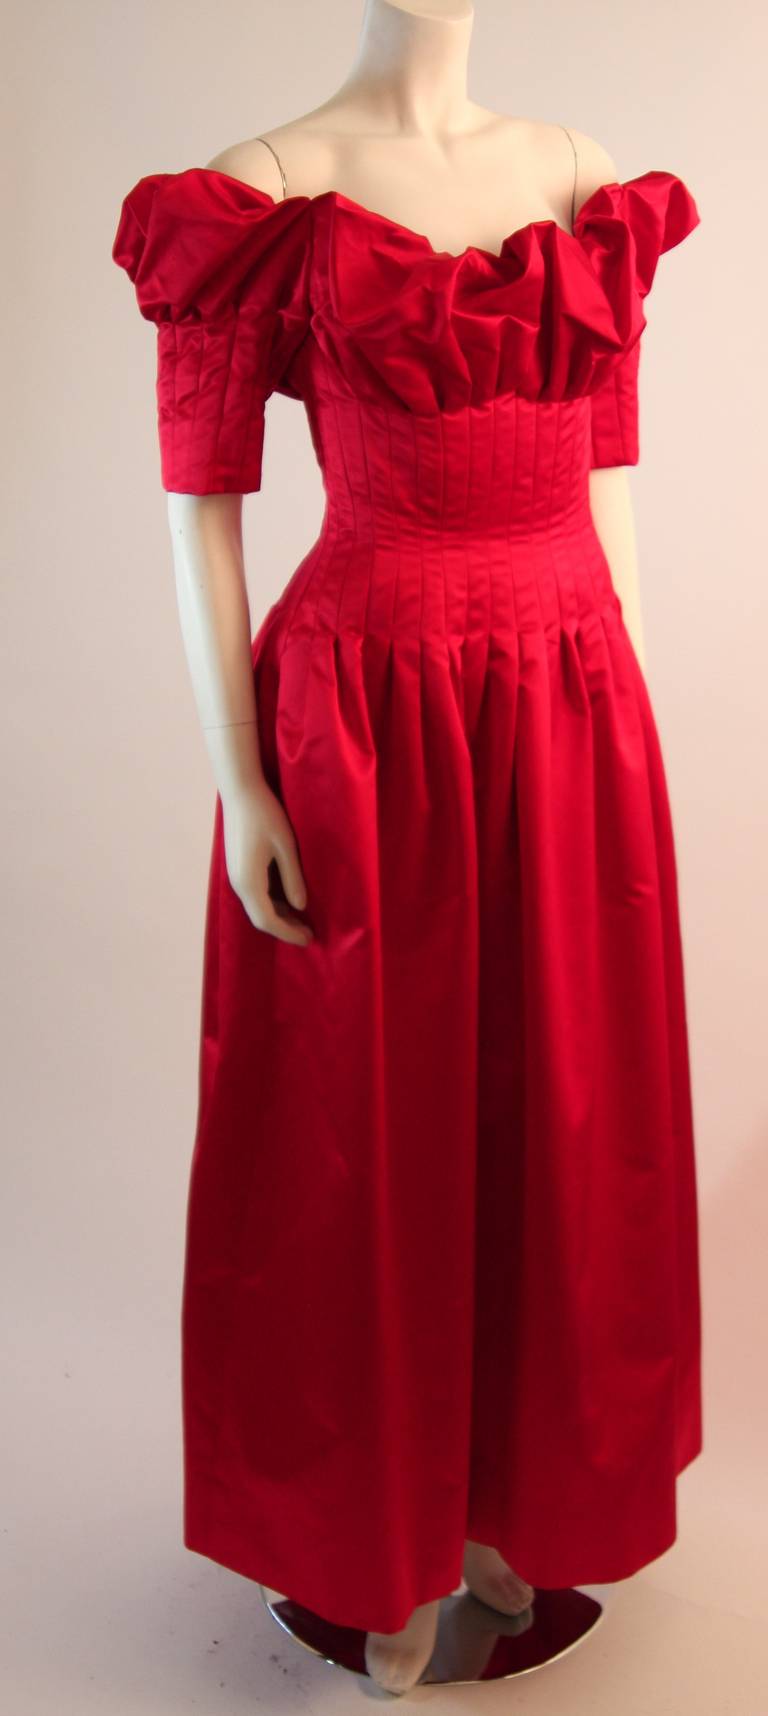 cardinal red dress